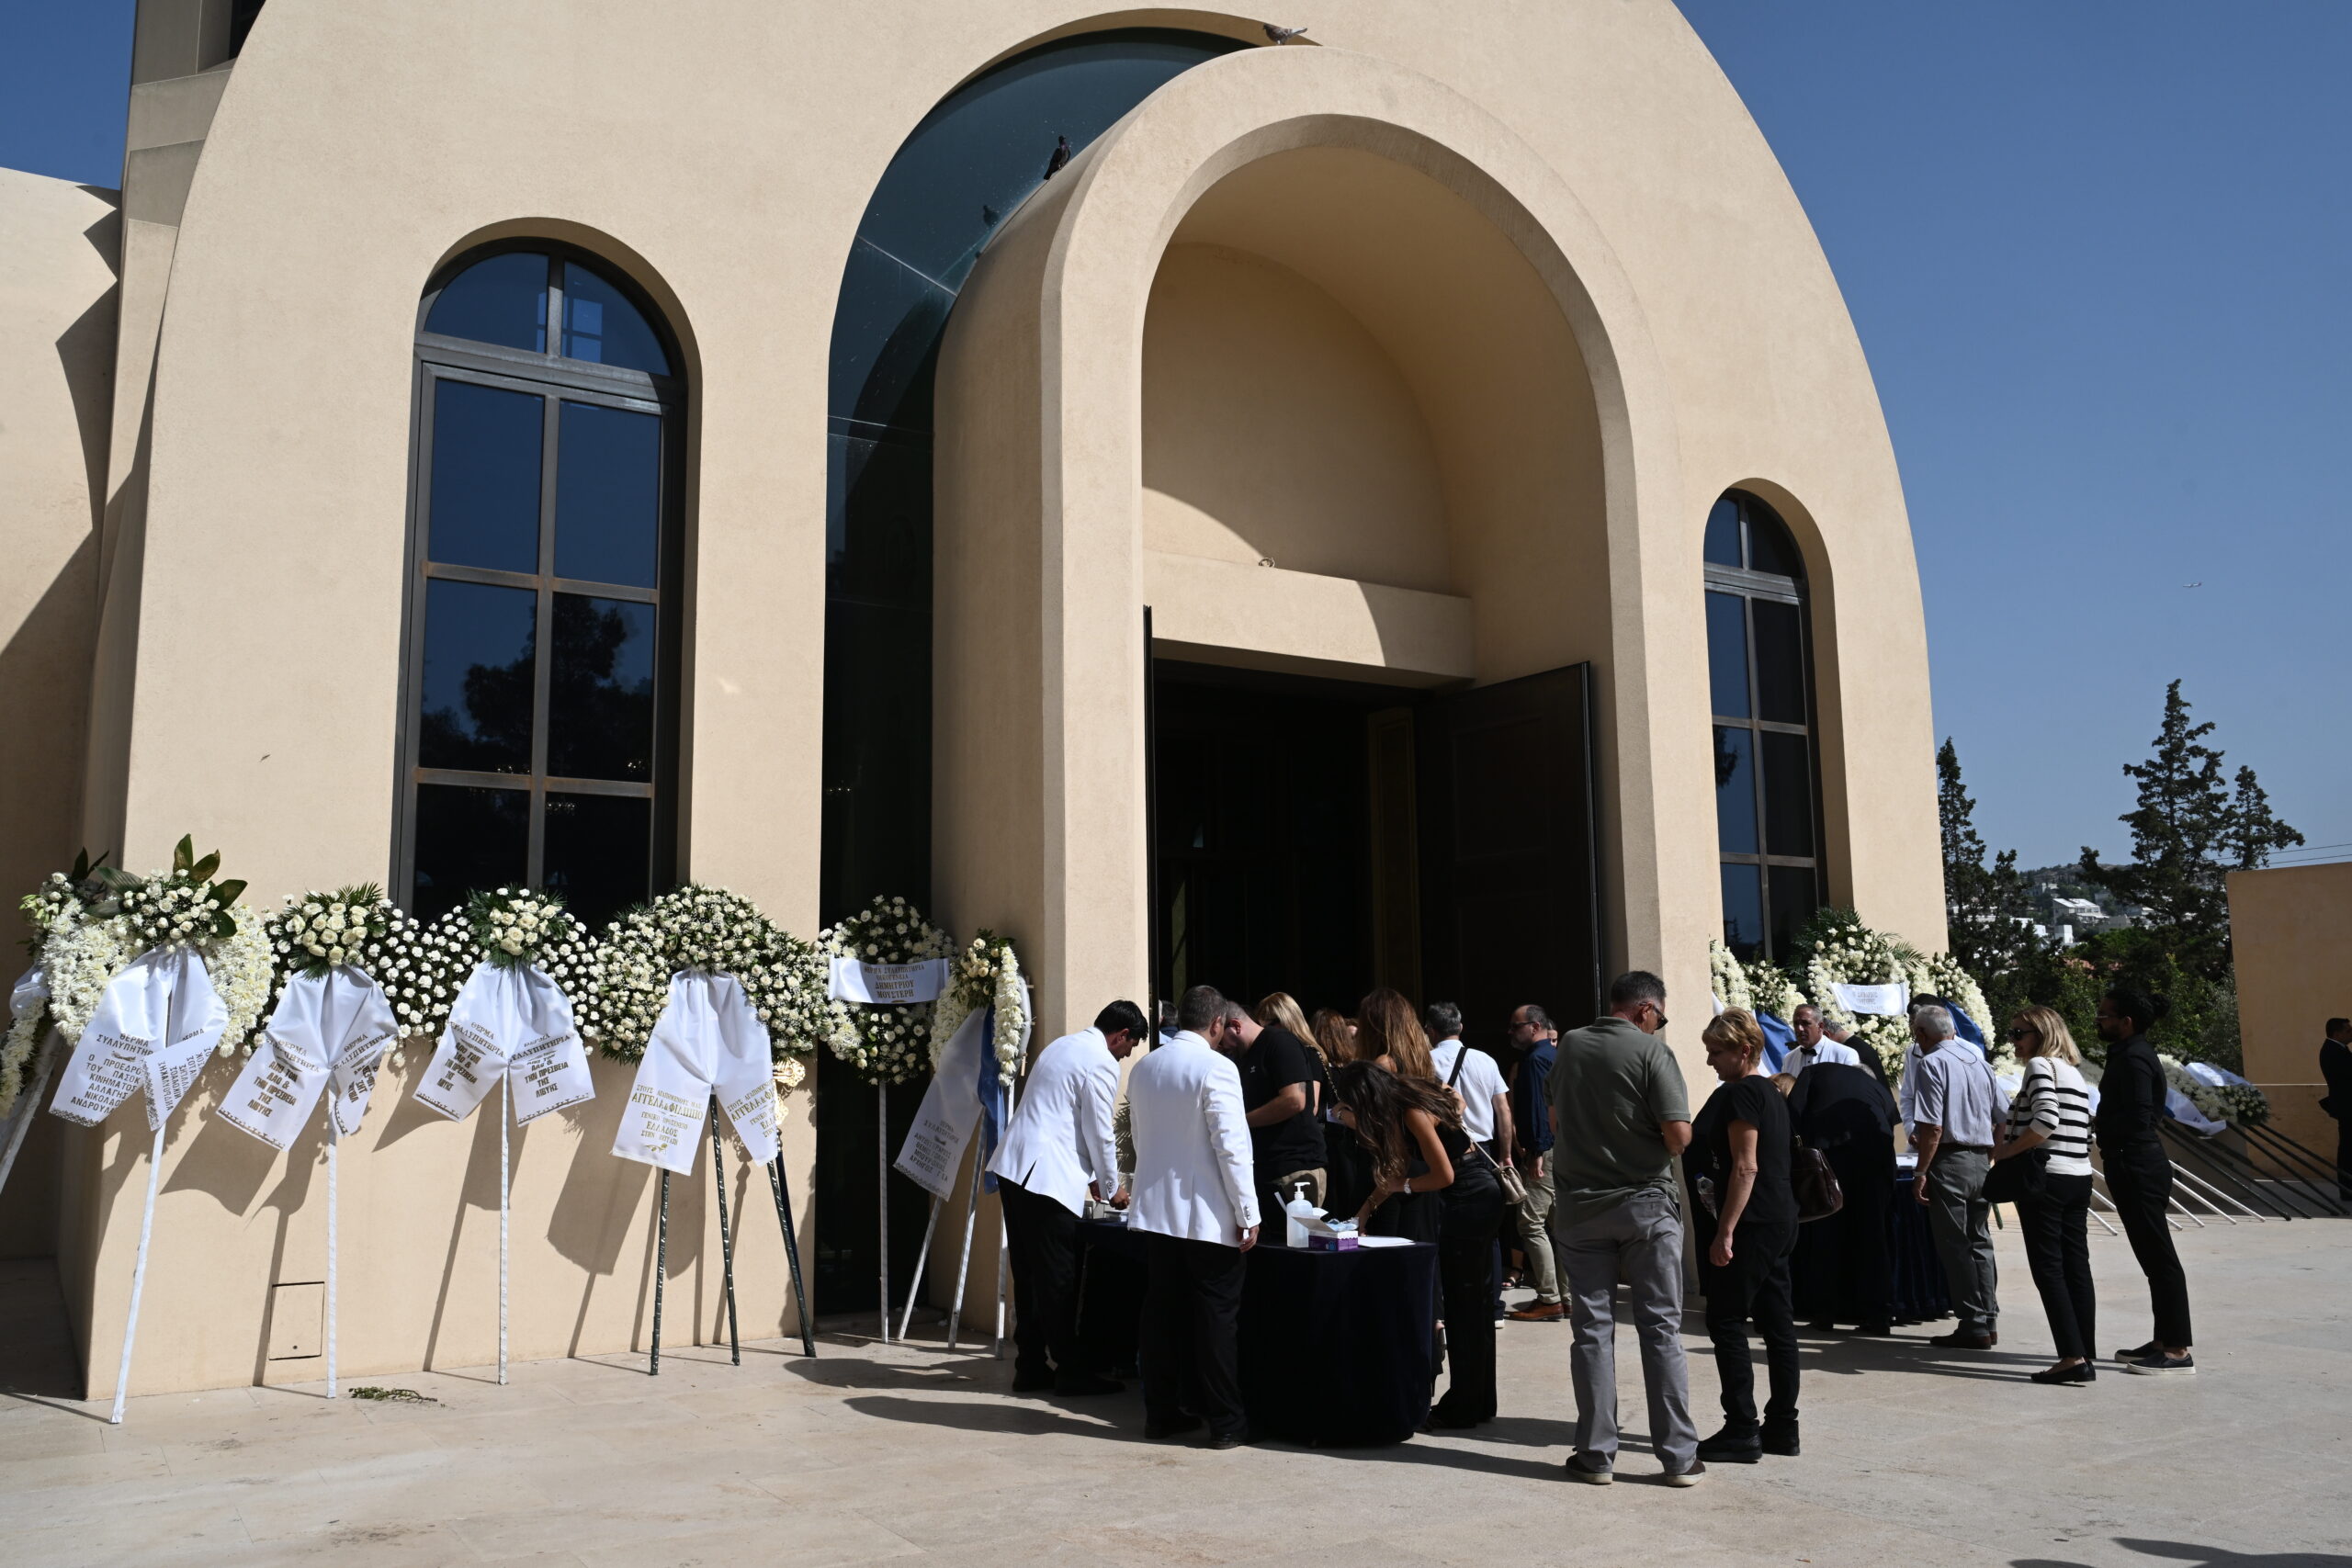 Θρήνος στην κηδεία των διερμηνέων της μοιραίας ελληνικής αποστολής στη Λιβύη (φωτογραφίες)